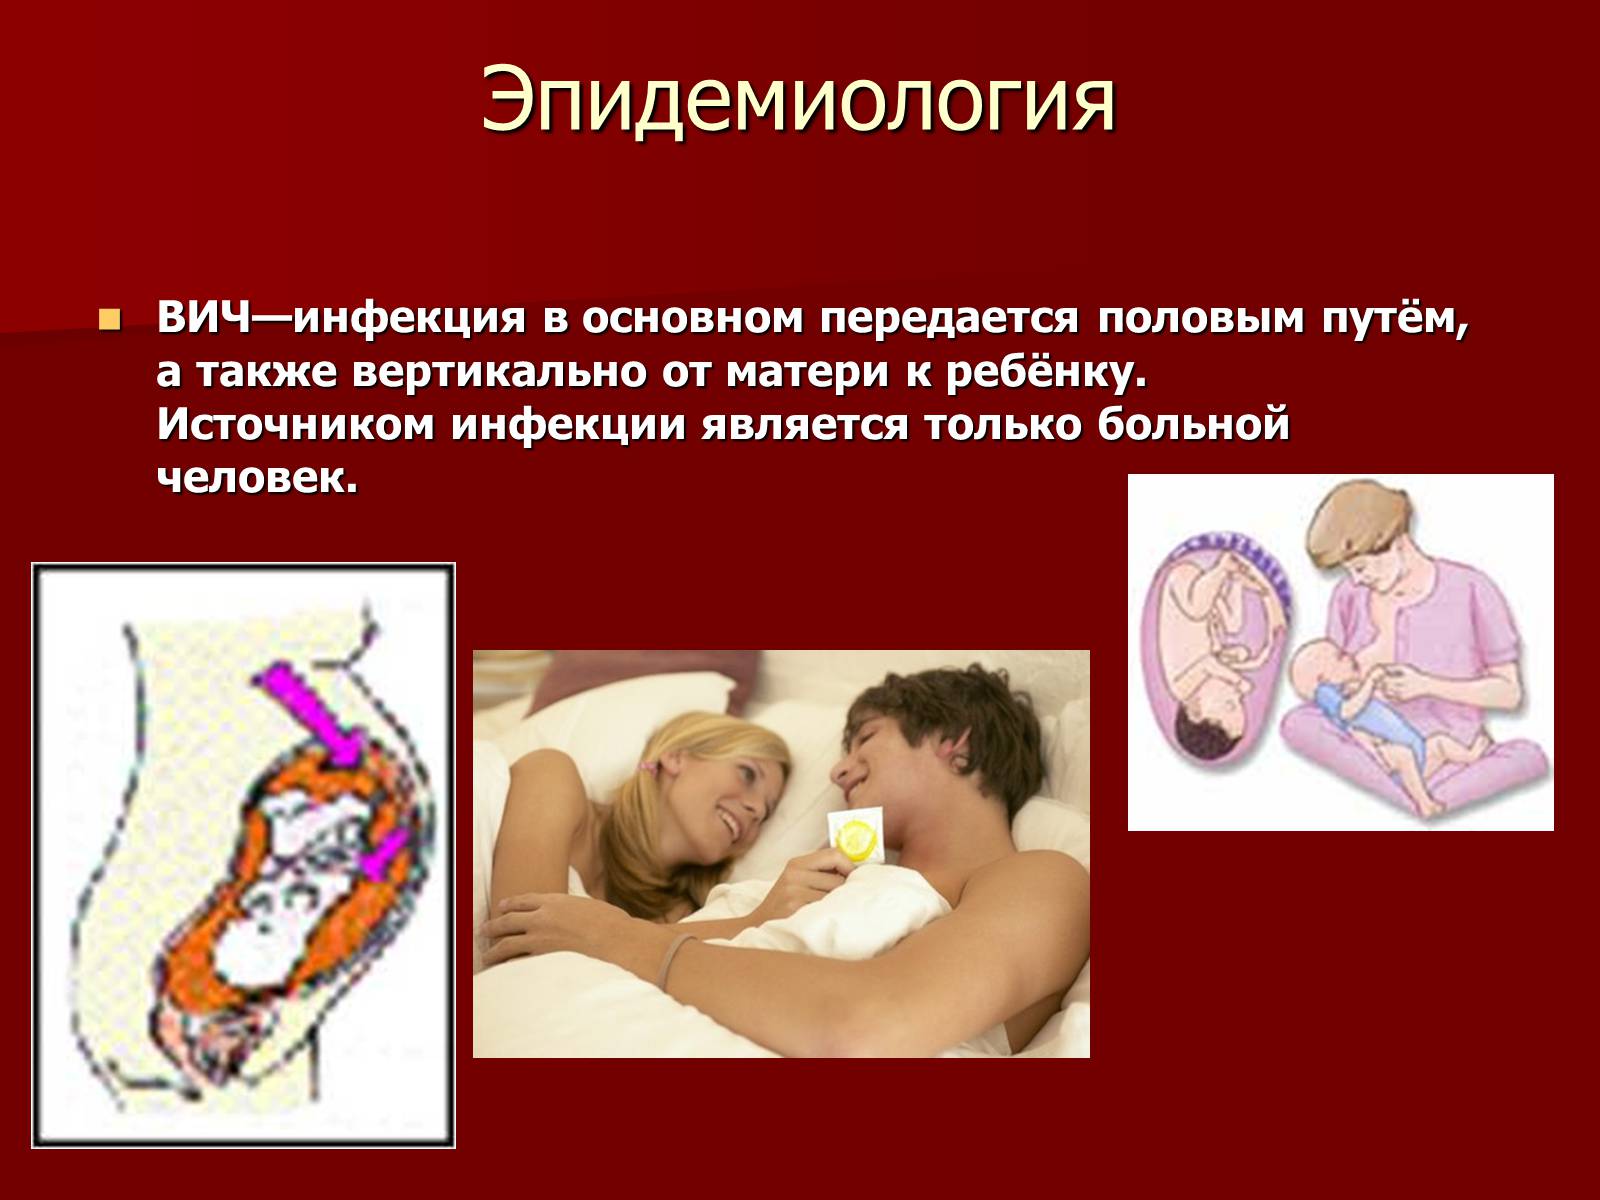 Способы заразиться спидом. Пути передачи ВИЧ инфекции. СПИД передается половым путем. Пути передачи половых инфекций.